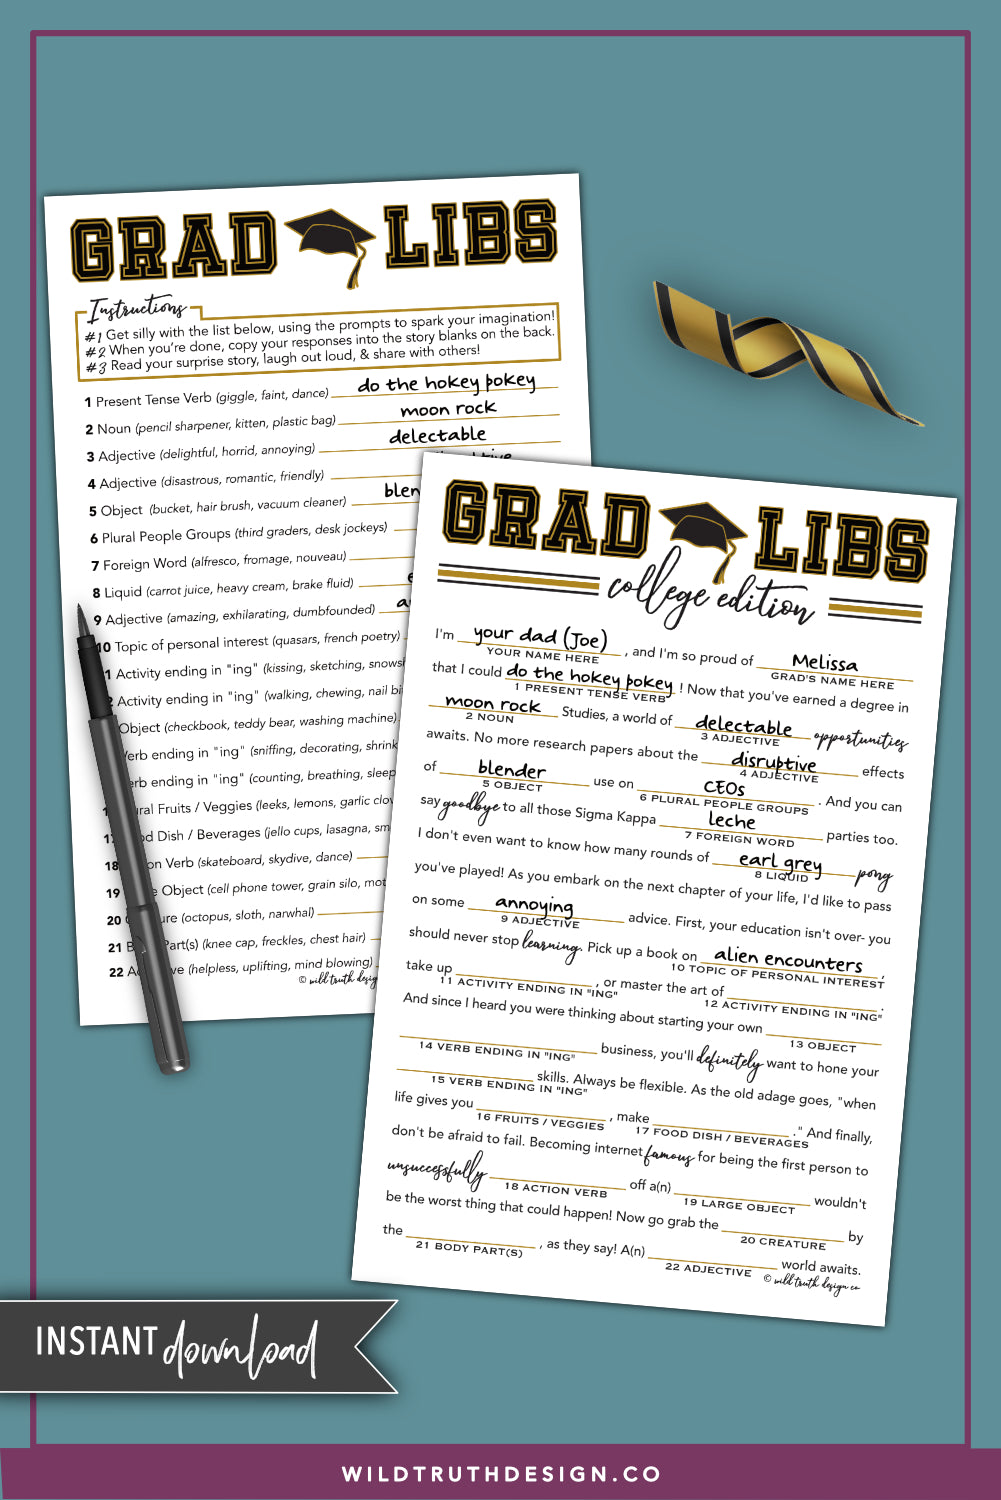 College Graduation Mad Libs - University Grad Libs